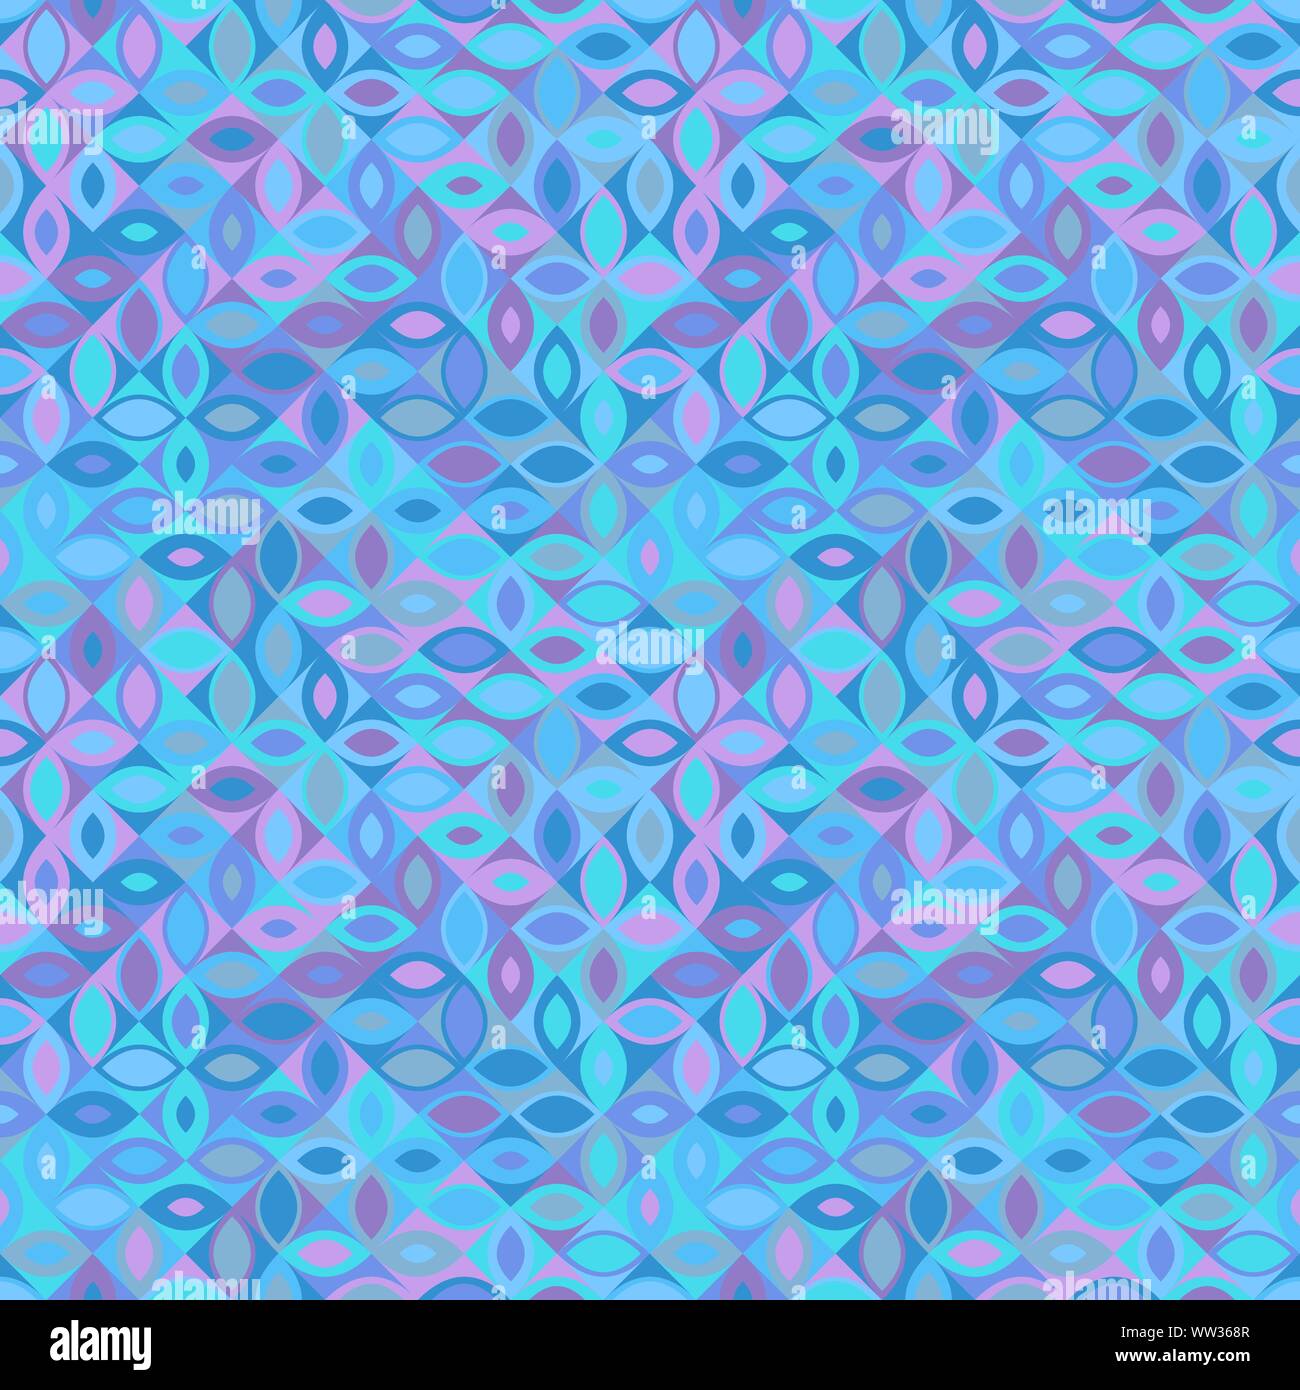 Nahtlose bunte Random gebogene Form Muster Hintergrund - abstrakt Vector Illustration Stock Vektor